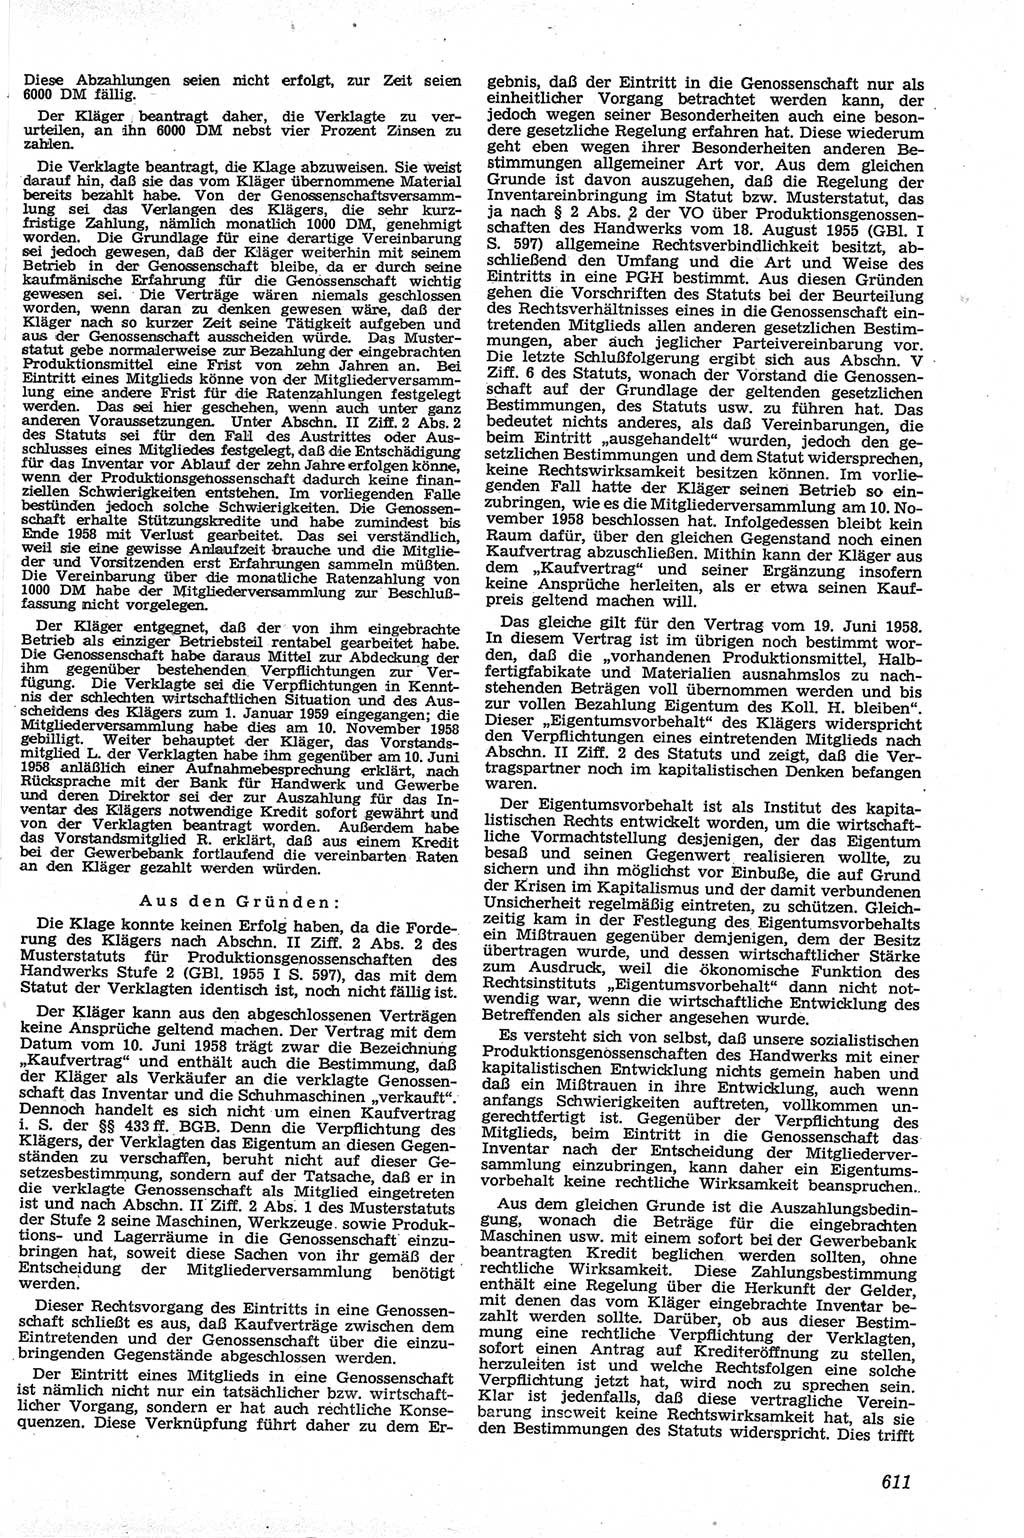 Neue Justiz (NJ), Zeitschrift für Recht und Rechtswissenschaft [Deutsche Demokratische Republik (DDR)], 13. Jahrgang 1959, Seite 611 (NJ DDR 1959, S. 611)